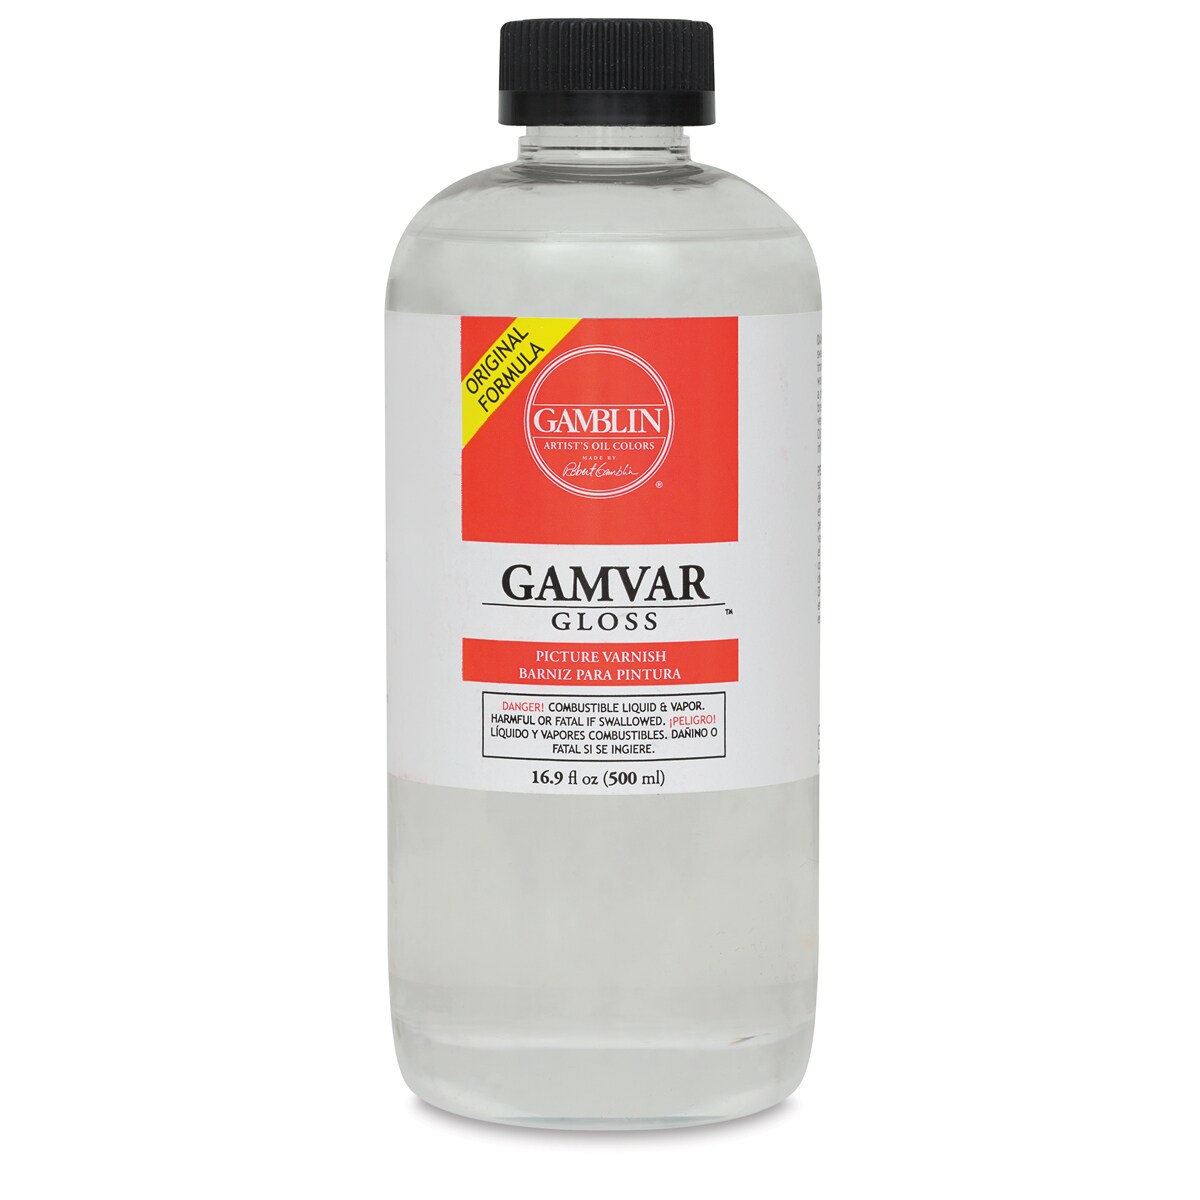 Gamblin Gamvar Gloss Varnish - 16.9 oz bottle